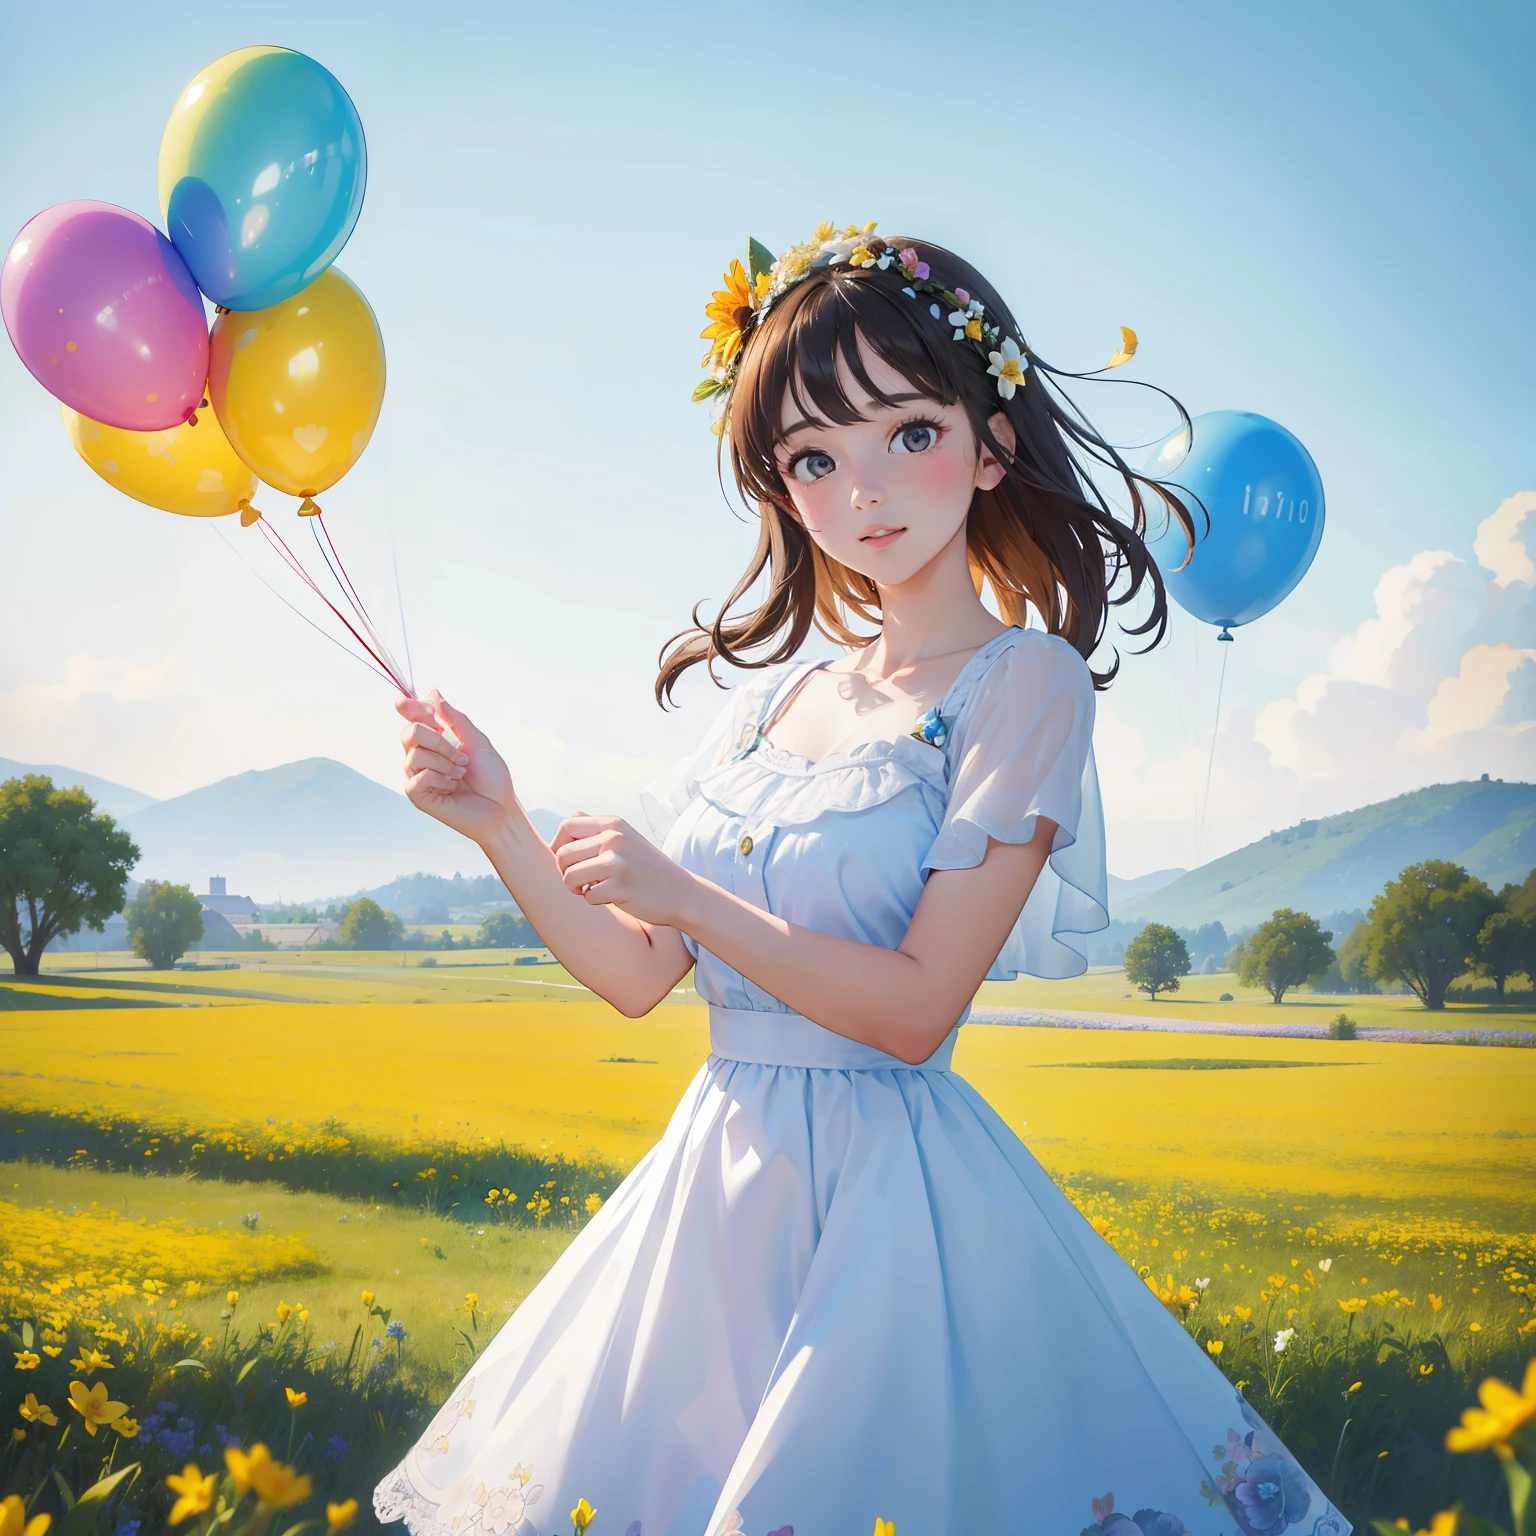 A girl Blumen halten, bunte Luftballons schweben im Himmel, Wiese, Tanzen, Blumen halten, Glücklich, Glücklich, perfekte Qualität, Klarer Fokus (Unordnung-Zuhause: 0.8), (Meisterwerk: 1.2) (Realistisch: 1.2) (Bokeh) (beste Qualität) (detaillierte Haut: 1.3) (komplizierte Details) (8K) (Detail Augen) (scharfer Fokus), (Glücklich)